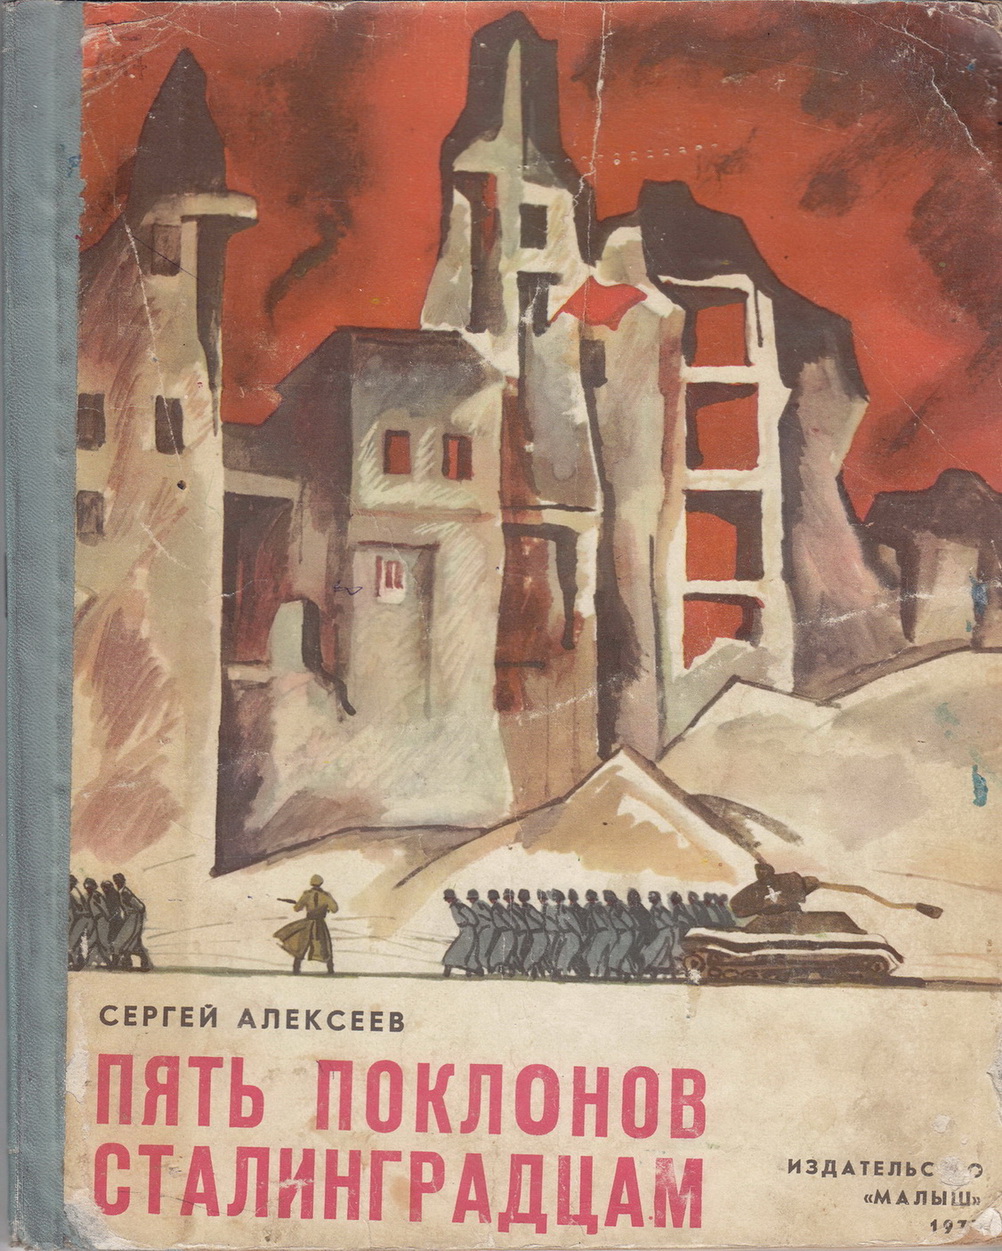 Нажмите для увеличения. Алексеев С. П. Пять поклонов сталинградцам (Фото книги из фонда библиотеки) 